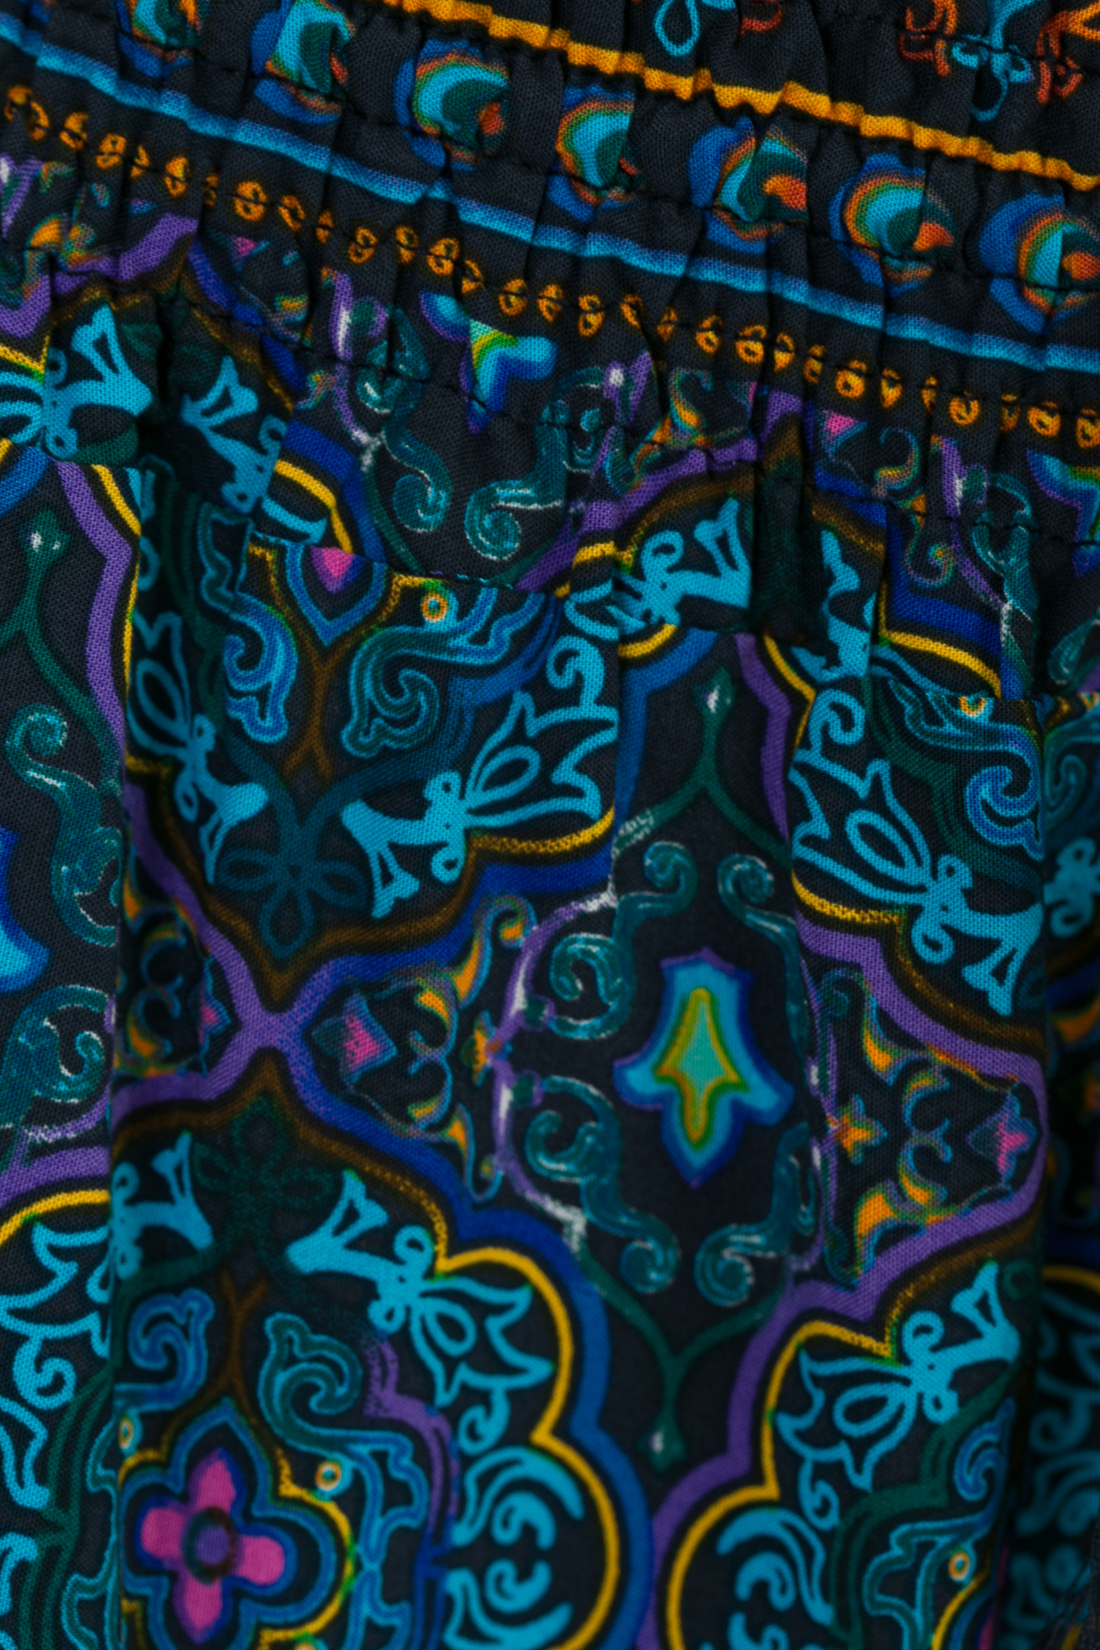 Брюки-шаровары из купонного материала (арт. baon B297033), размер L, цвет голубой Брюки-шаровары из купонного материала (арт. baon B297033) - фото 4